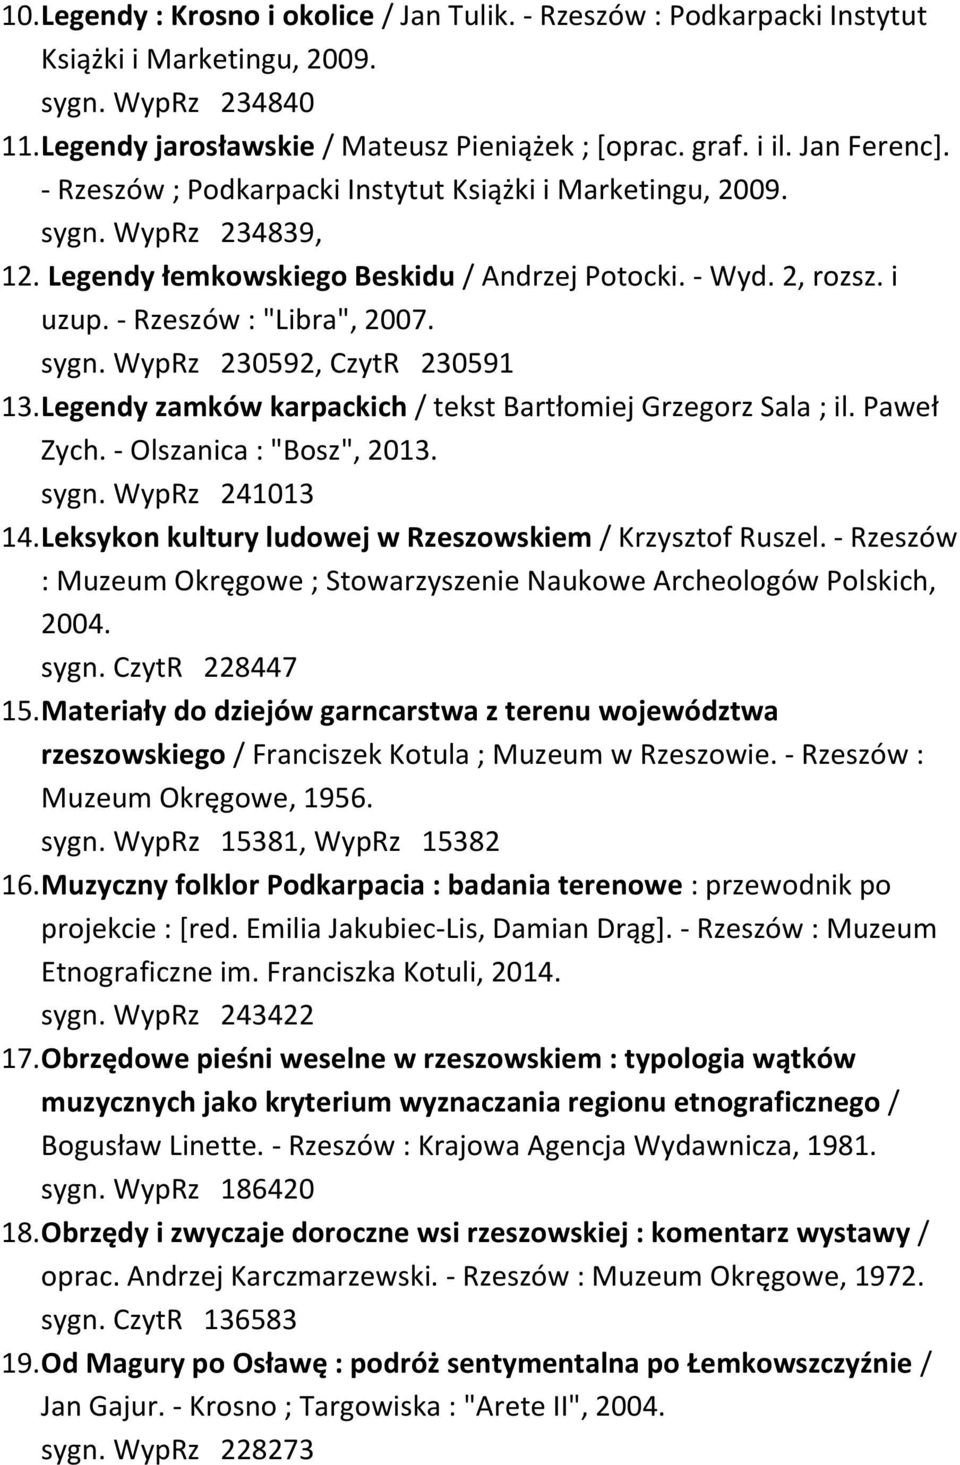 sygn. WypRz 230592, CzytR 230591 13. Legendy zamków karpackich / tekst Bartłomiej Grzegorz Sala ; il. Paweł Zych. - Olszanica : "Bosz", 2013. sygn. WypRz 241013 14.